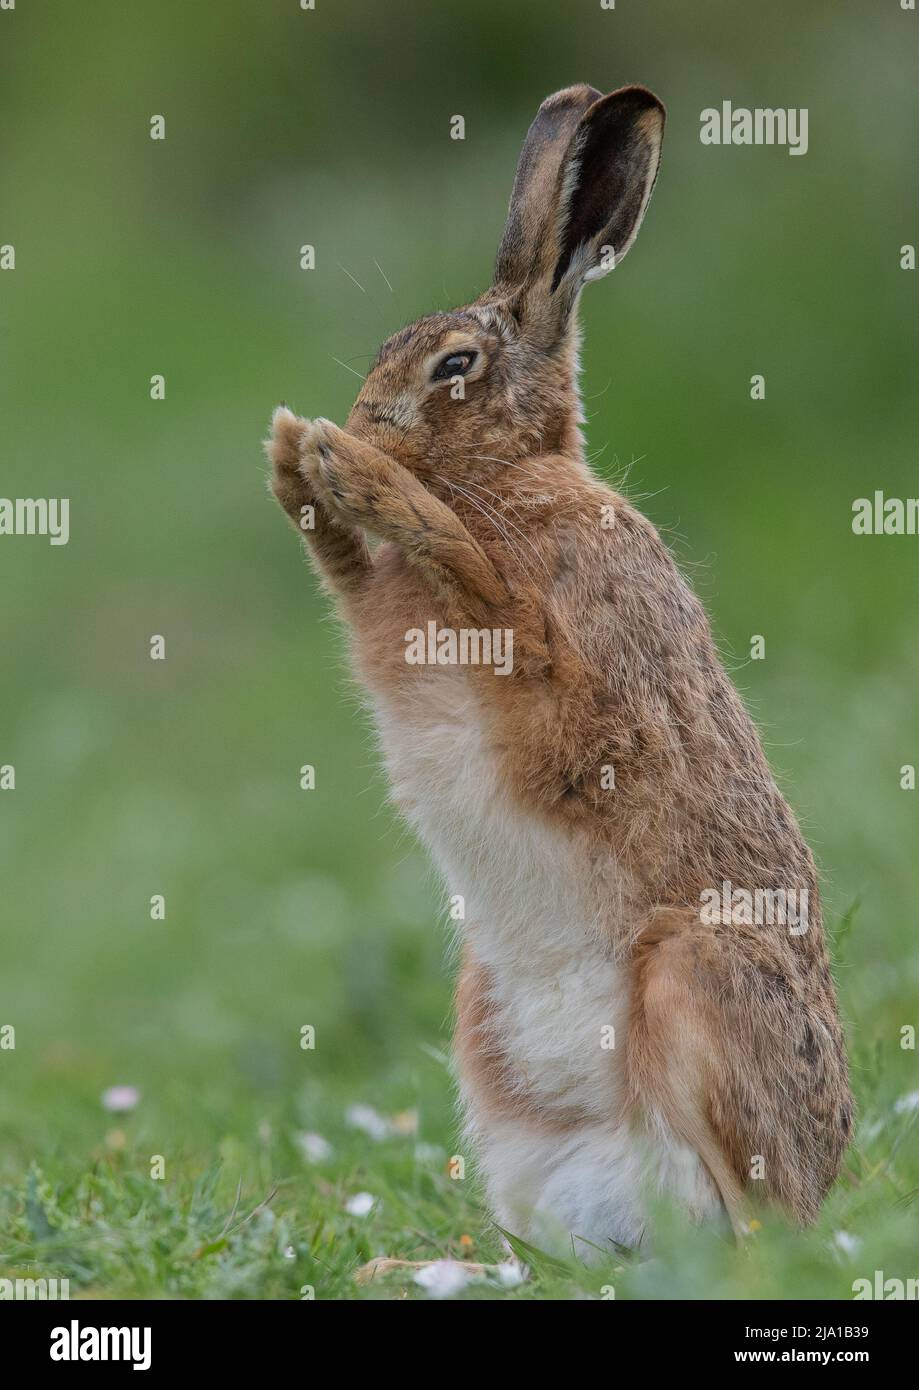 Ein brauner Hase (Lepus europaeus), der aufsteht und ein Gebet mit seinen Pfoten zusammen spricht. Ein süßer Schuss von einem schüchternen wilden Tier. Suffolk, Großbritannien Stockfoto